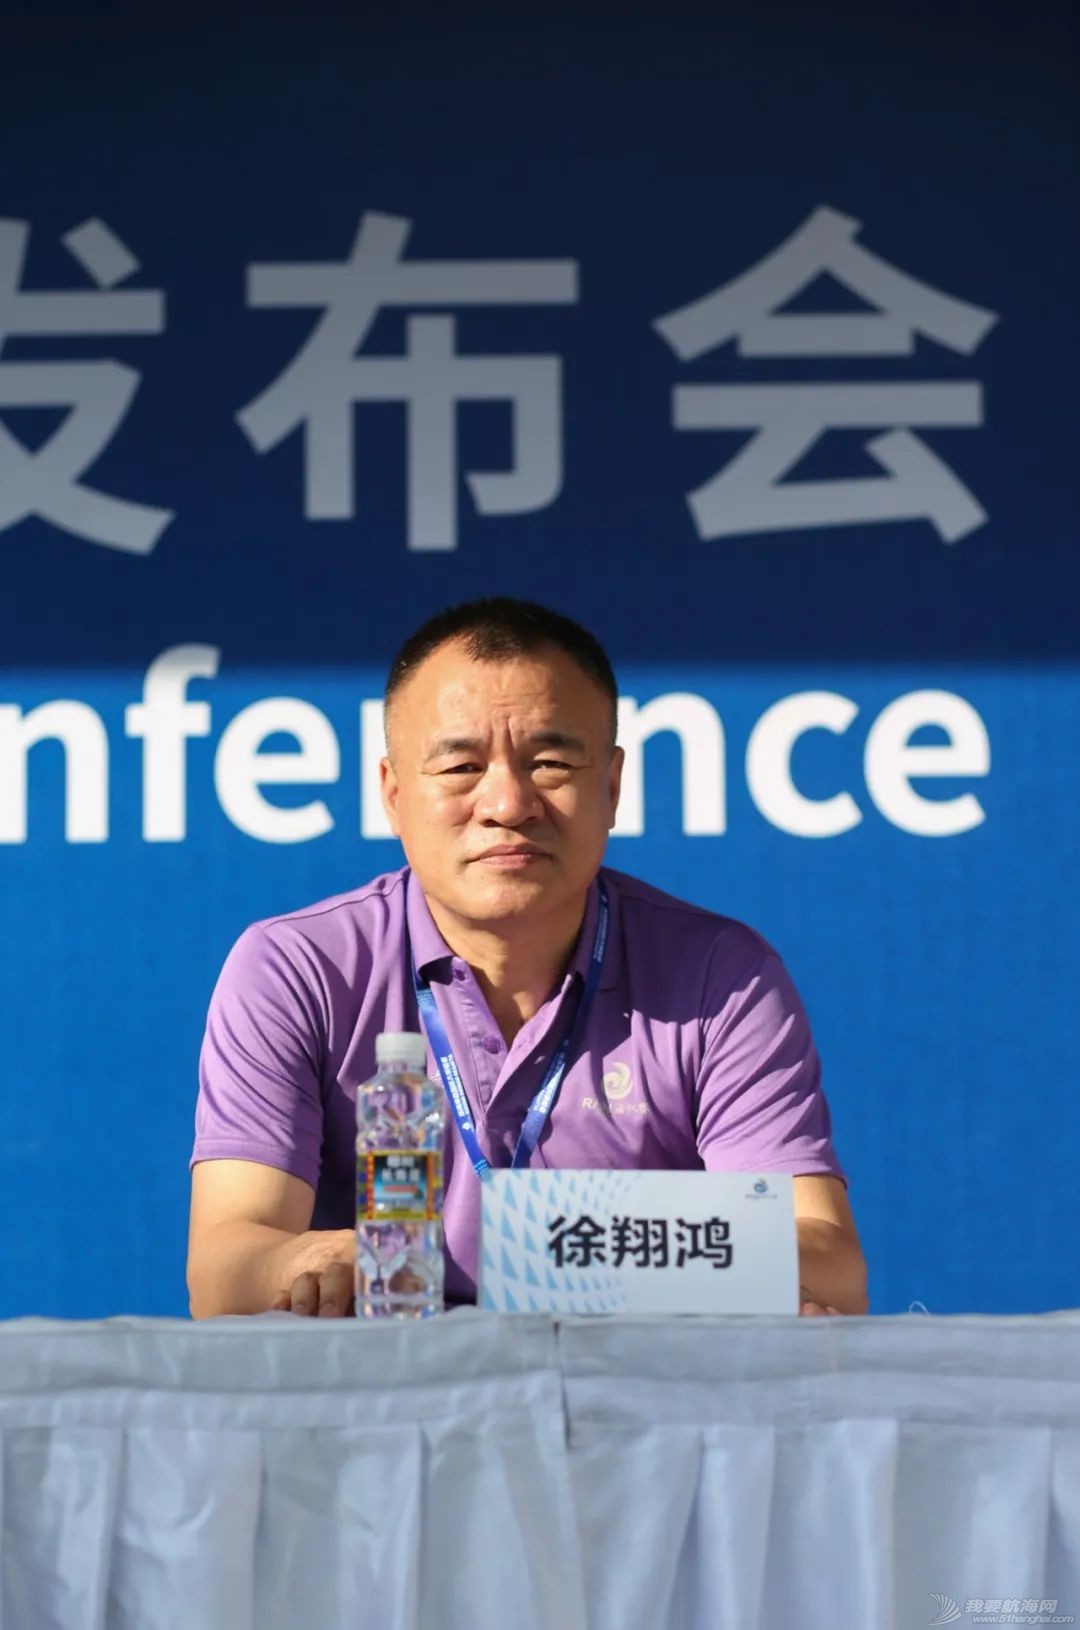 中国体育彩票杯2020第十一届海帆赛举行新闻发布会w3.jpg